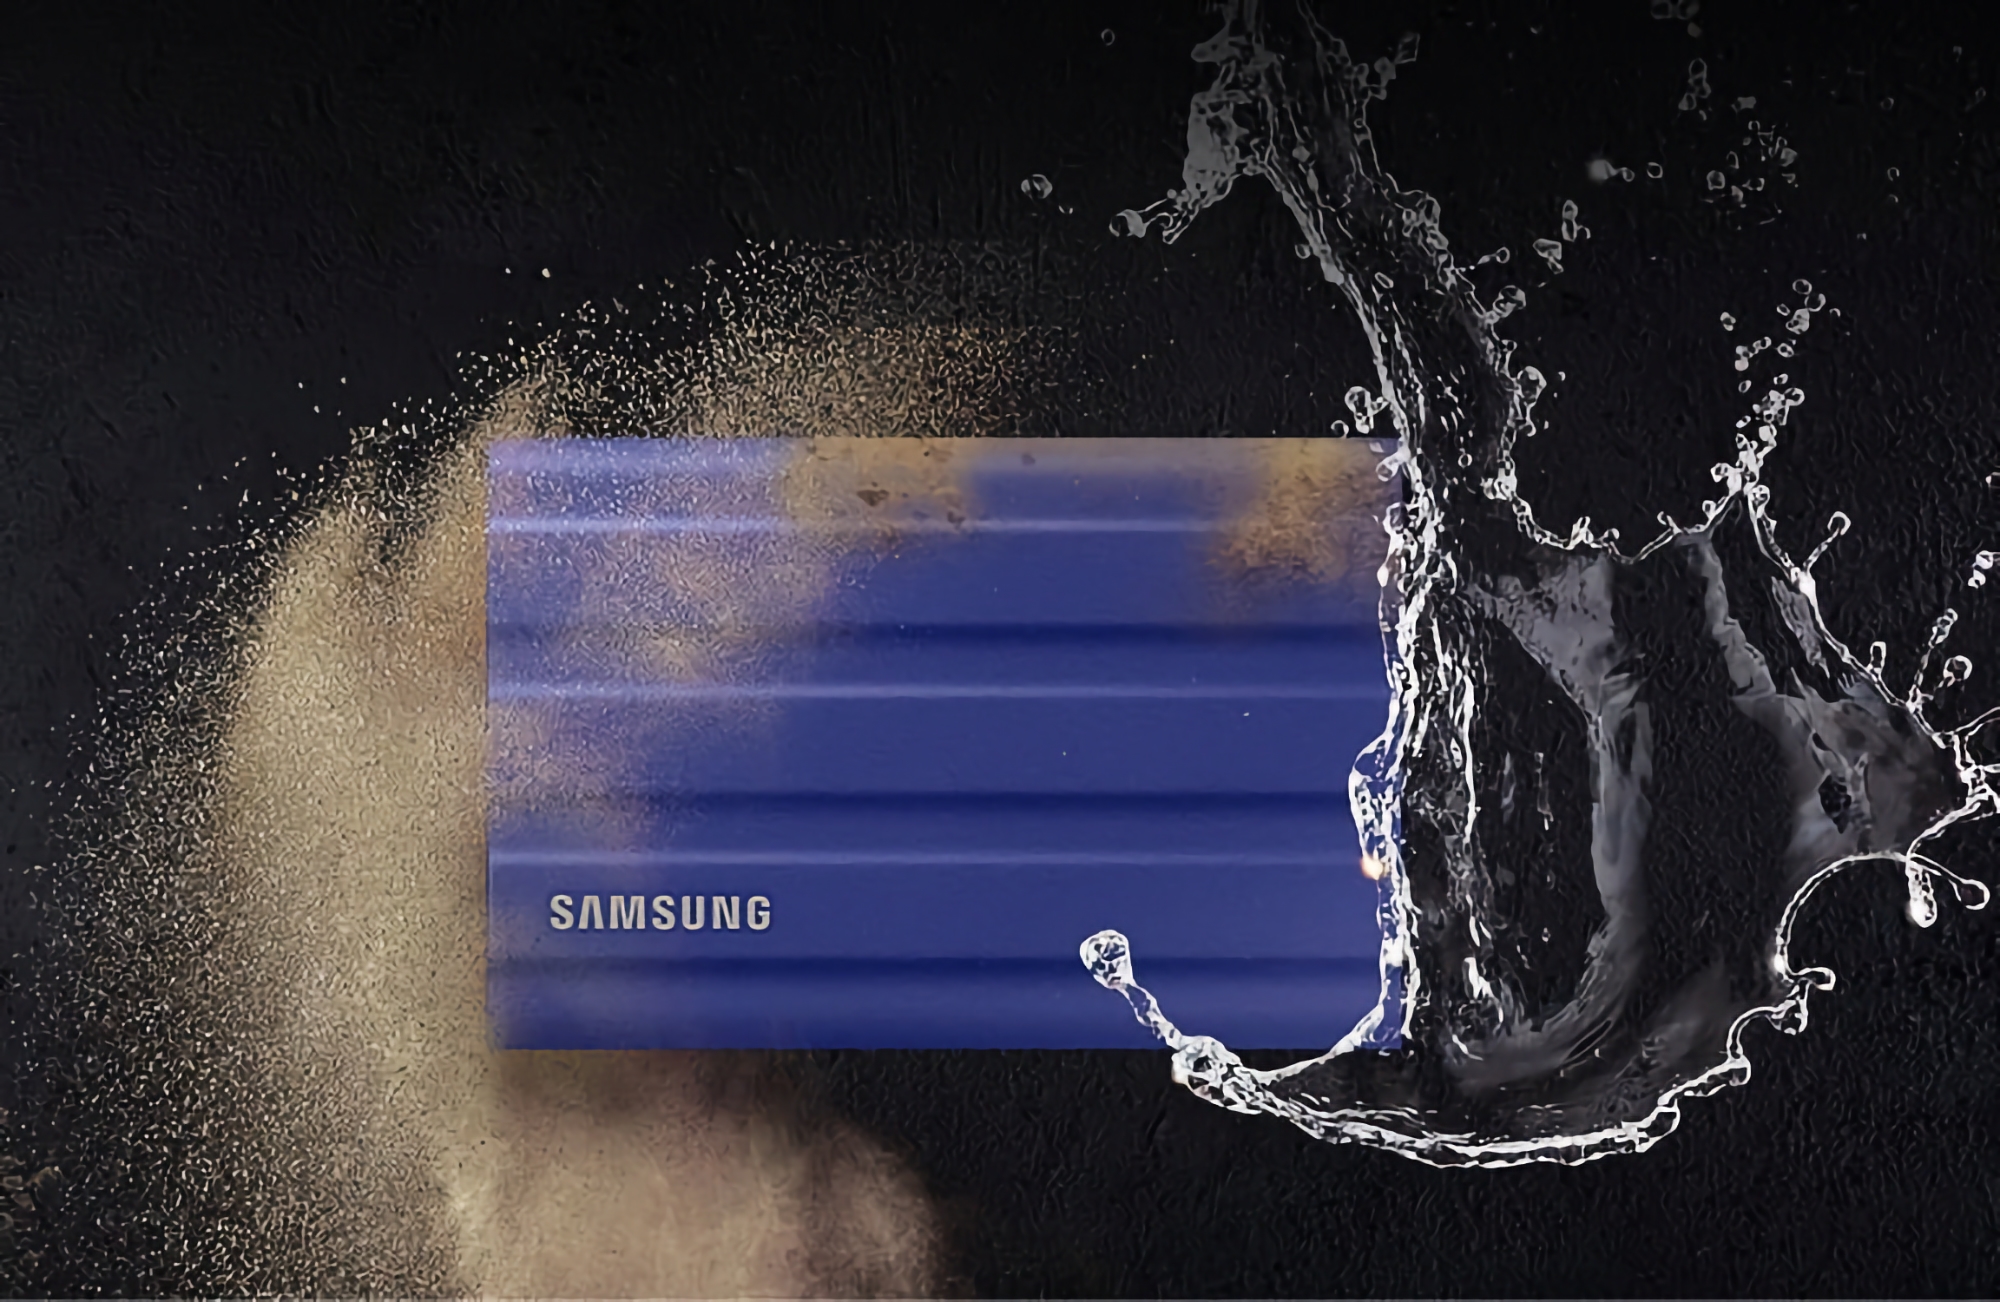 Samsung Portable T7 Shield auf Amazon: SSD-Laufwerk mit Wasser- und Stoßschutz auf 90,91 Euro gesenkt